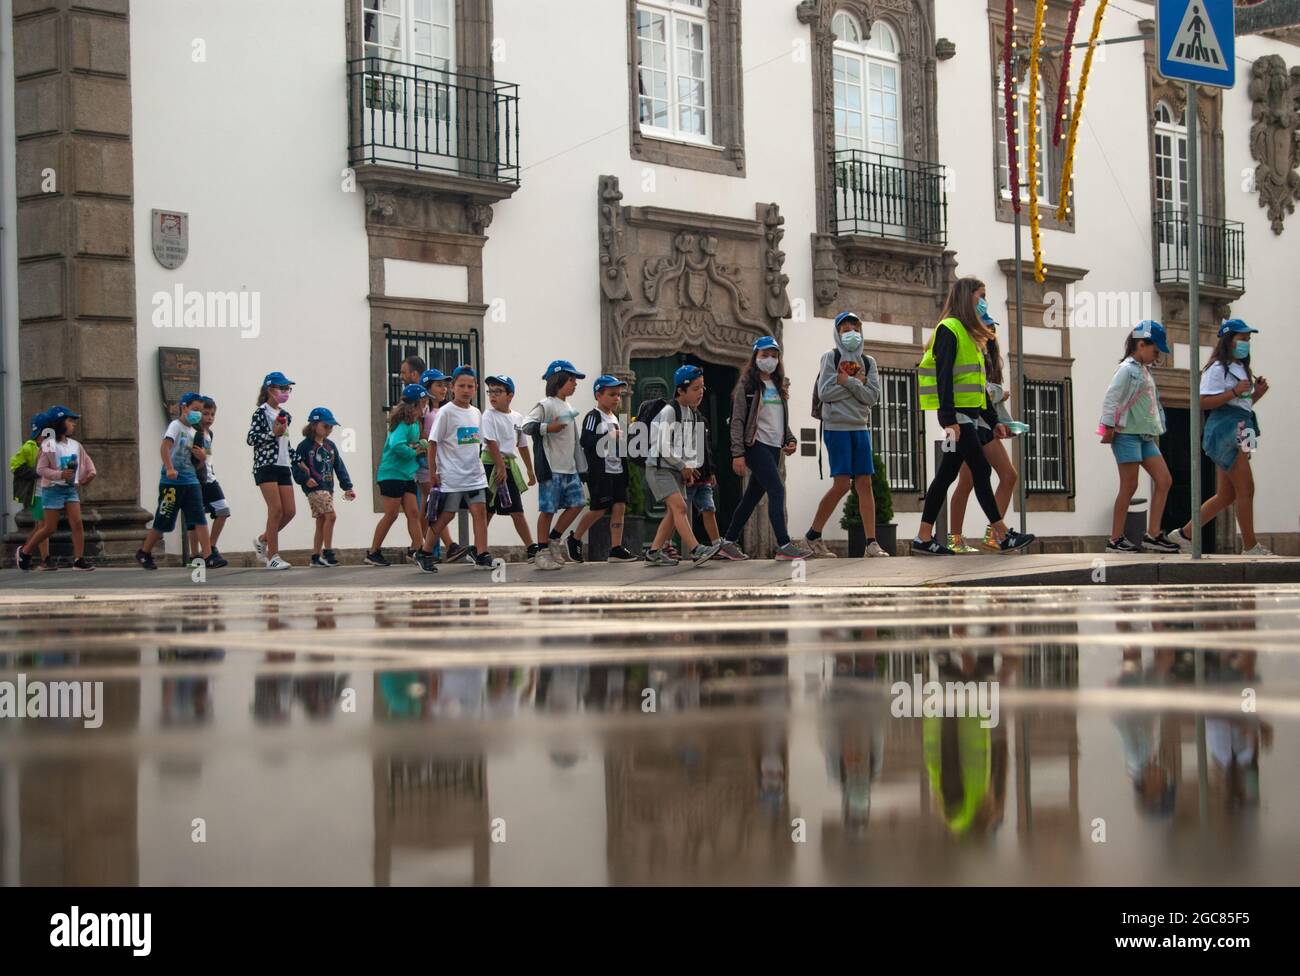 VIANA DO CASTELO, PORTUGAL - 30 JUILLET 2021: Groupe organisé d'enfants marchant dans la rue avec des aînés dans des gilets verts reflétés dans l'eau. Banque D'Images